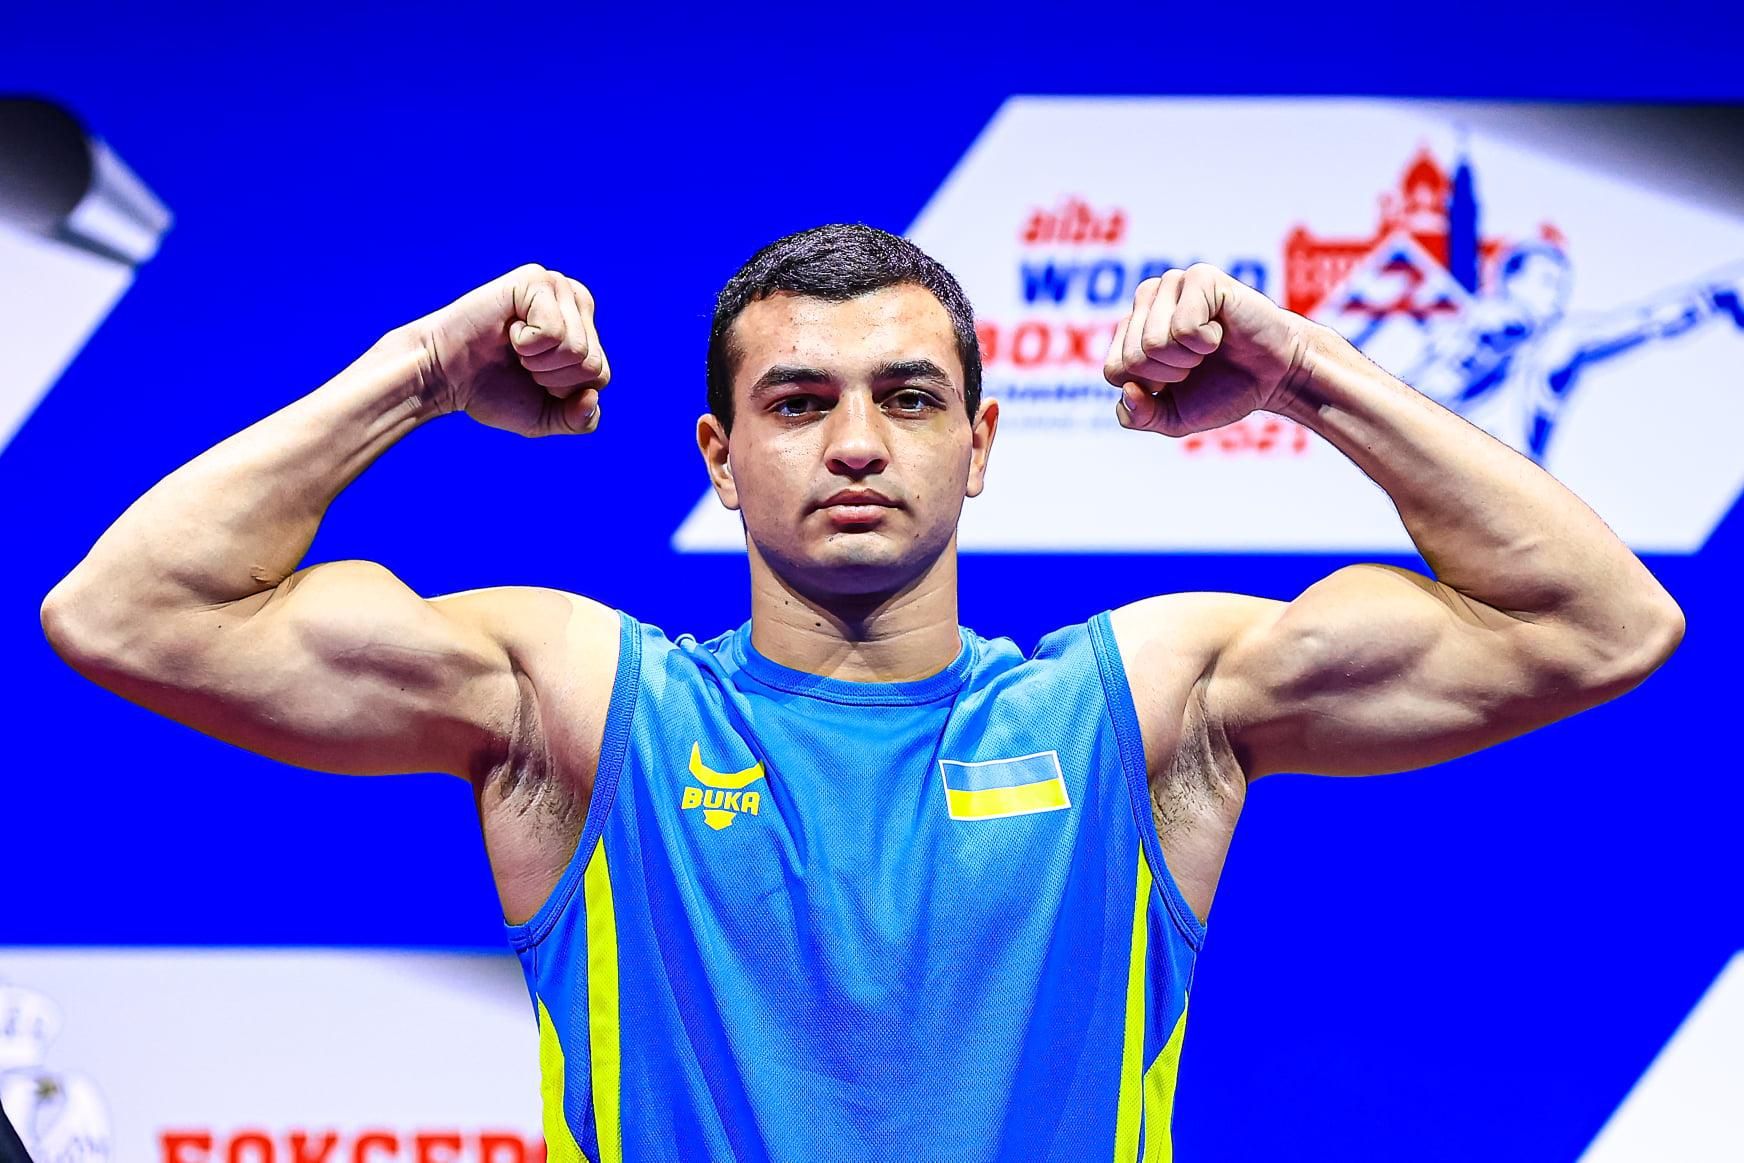 19-річний українець Юрій Захарєєв став чемпіоном світу з боксу, перемігши у фіналі росіянина - бокс новини - Спорт 24